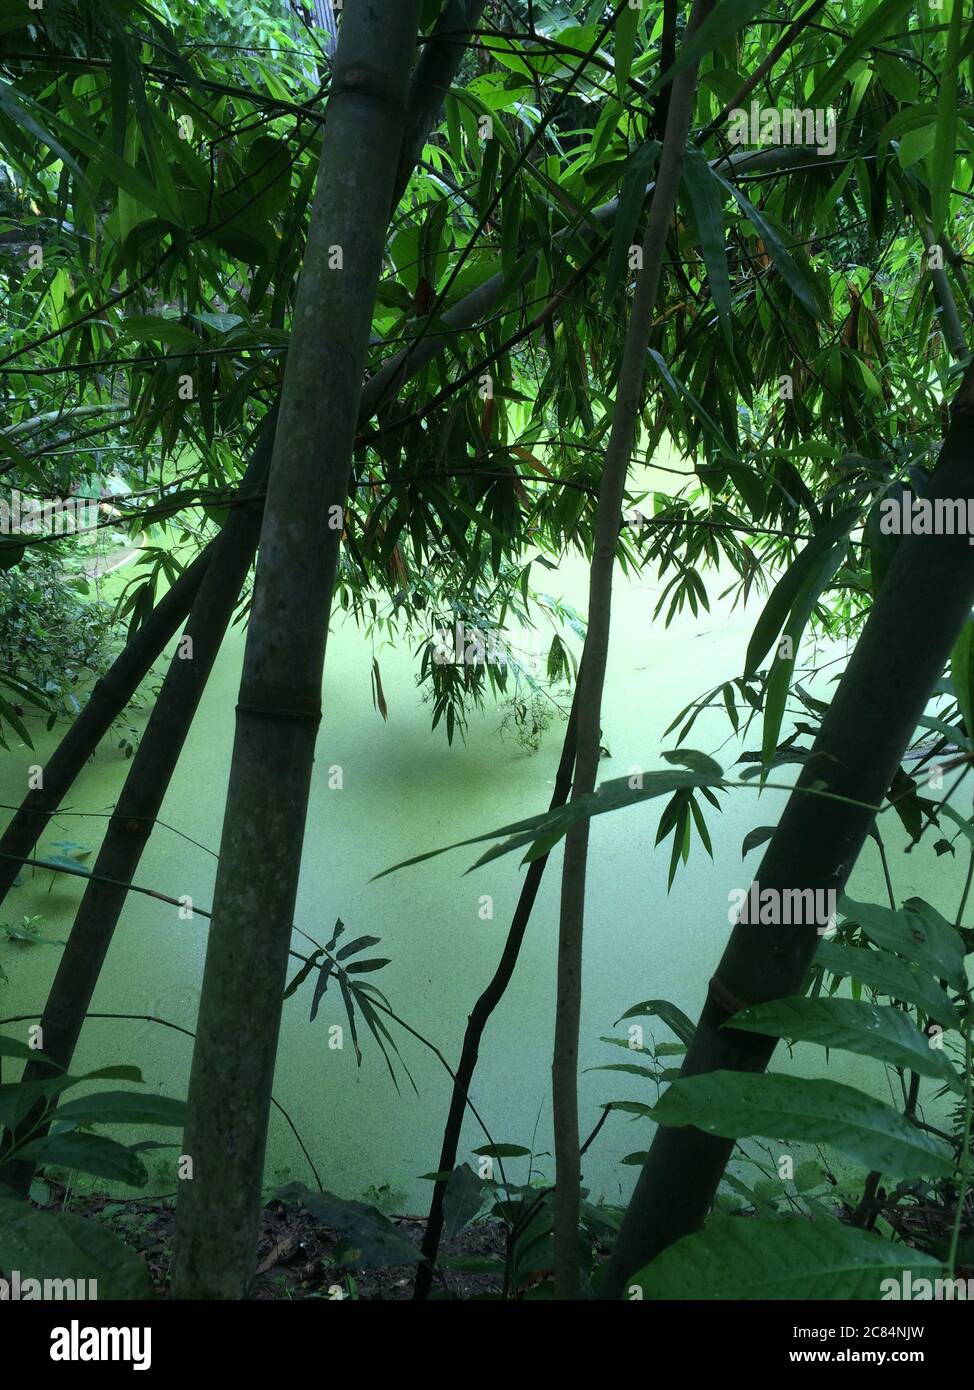 Toujours et serein comme peinture japonaise les arbres, les feuilles et les plantes poussent sur la rive d'une plante couverte de duckweed à Barisal, au Bangladesh. Banque D'Images